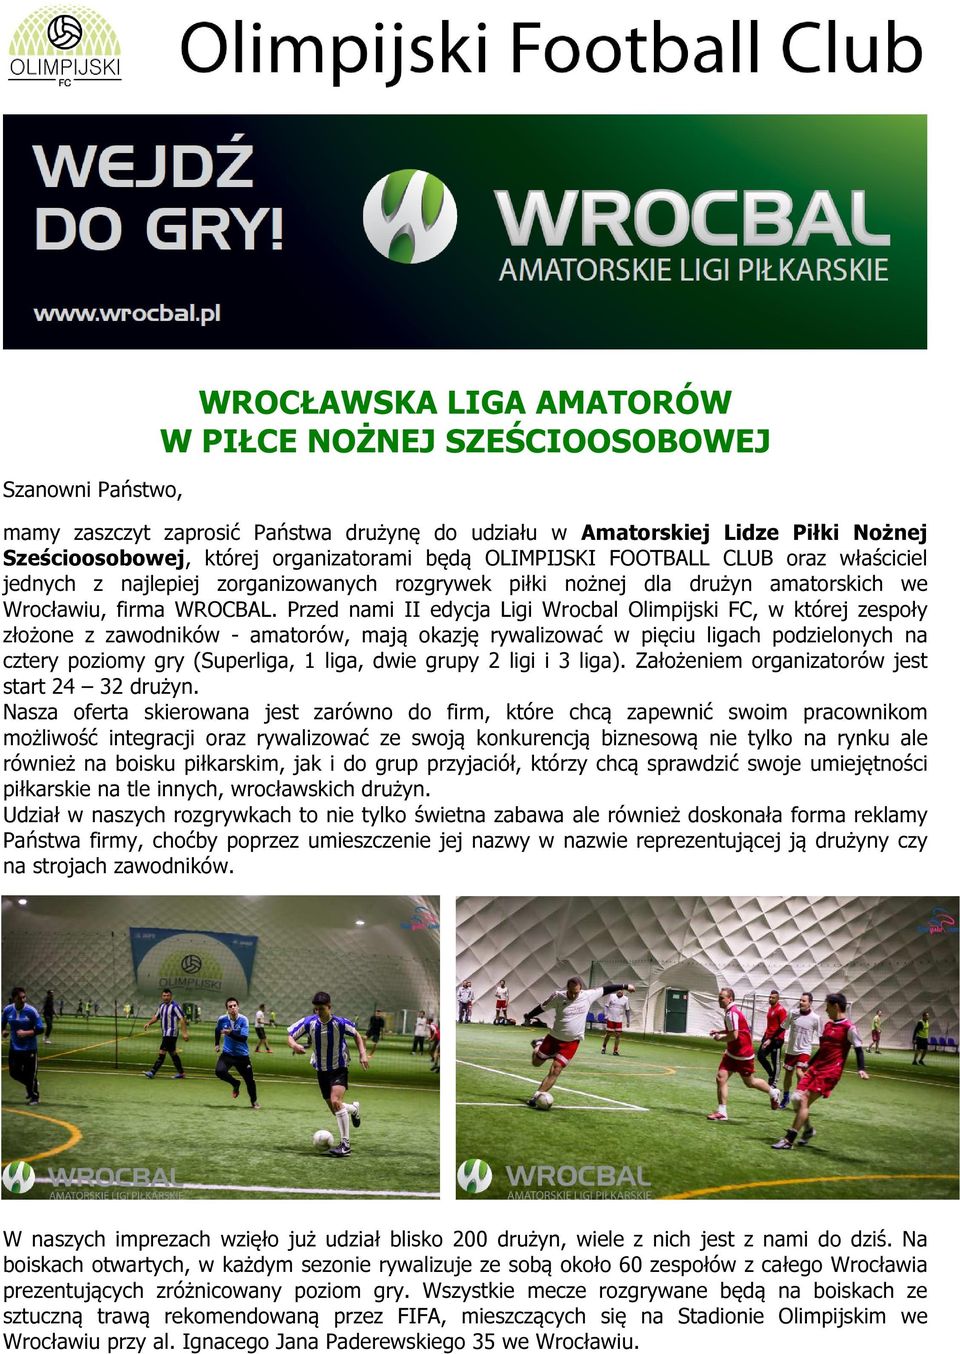 Przed nami II edycja Ligi Wrocbal Olimpijski FC, w której zespoły złożone z zawodników - amatorów, mają okazję rywalizować w pięciu ligach podzielonych na cztery poziomy gry (Superliga, 1 liga, dwie